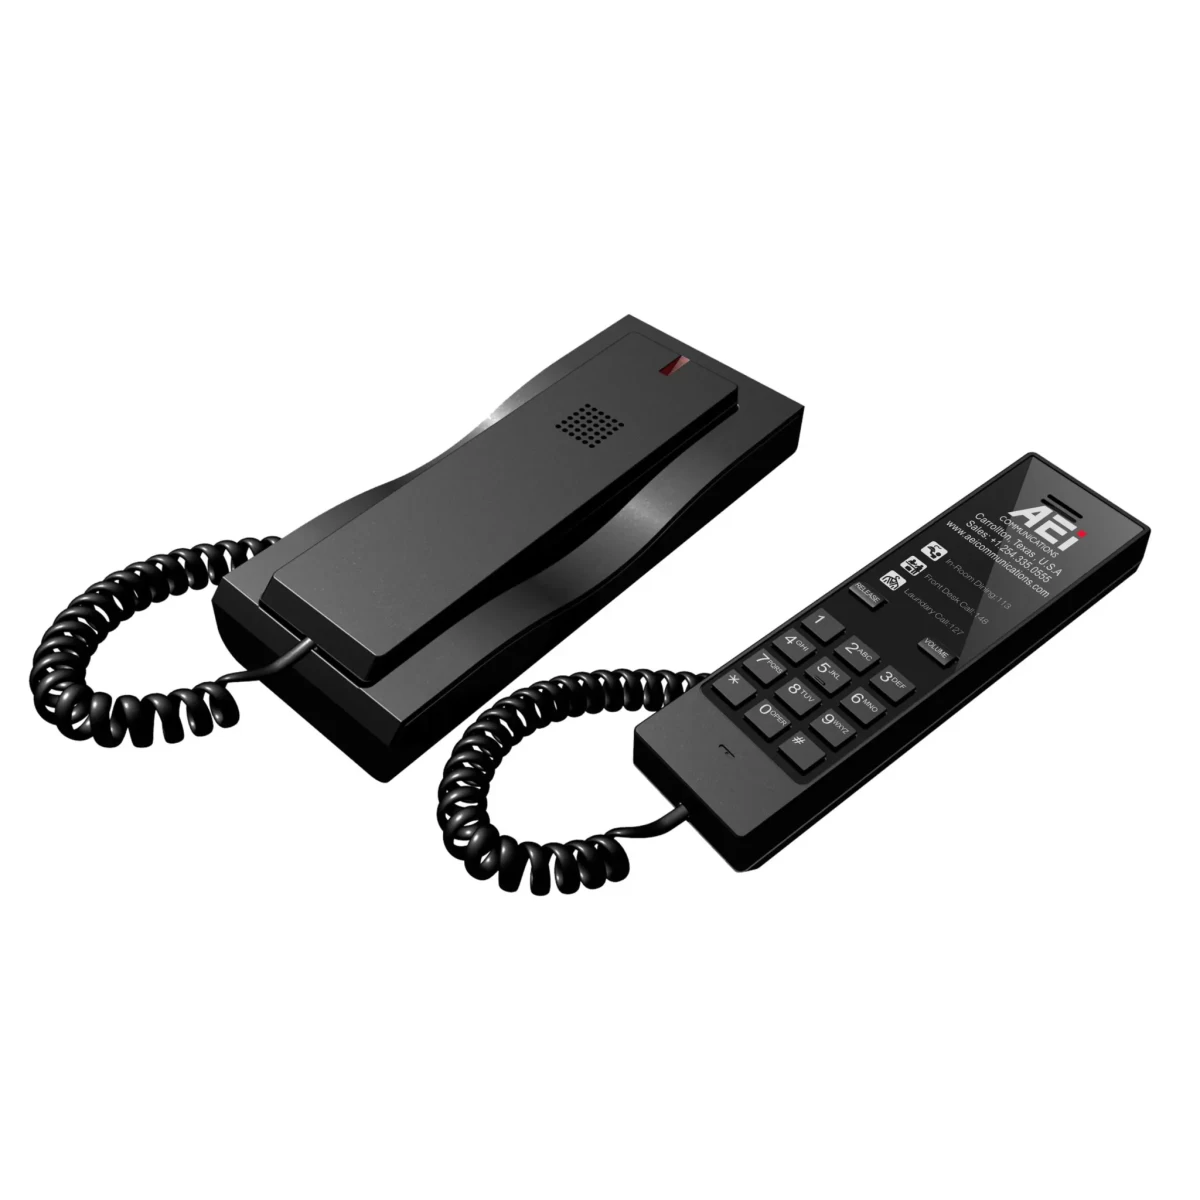 AEI AAX-4100 Trimline Single-Line Telephone